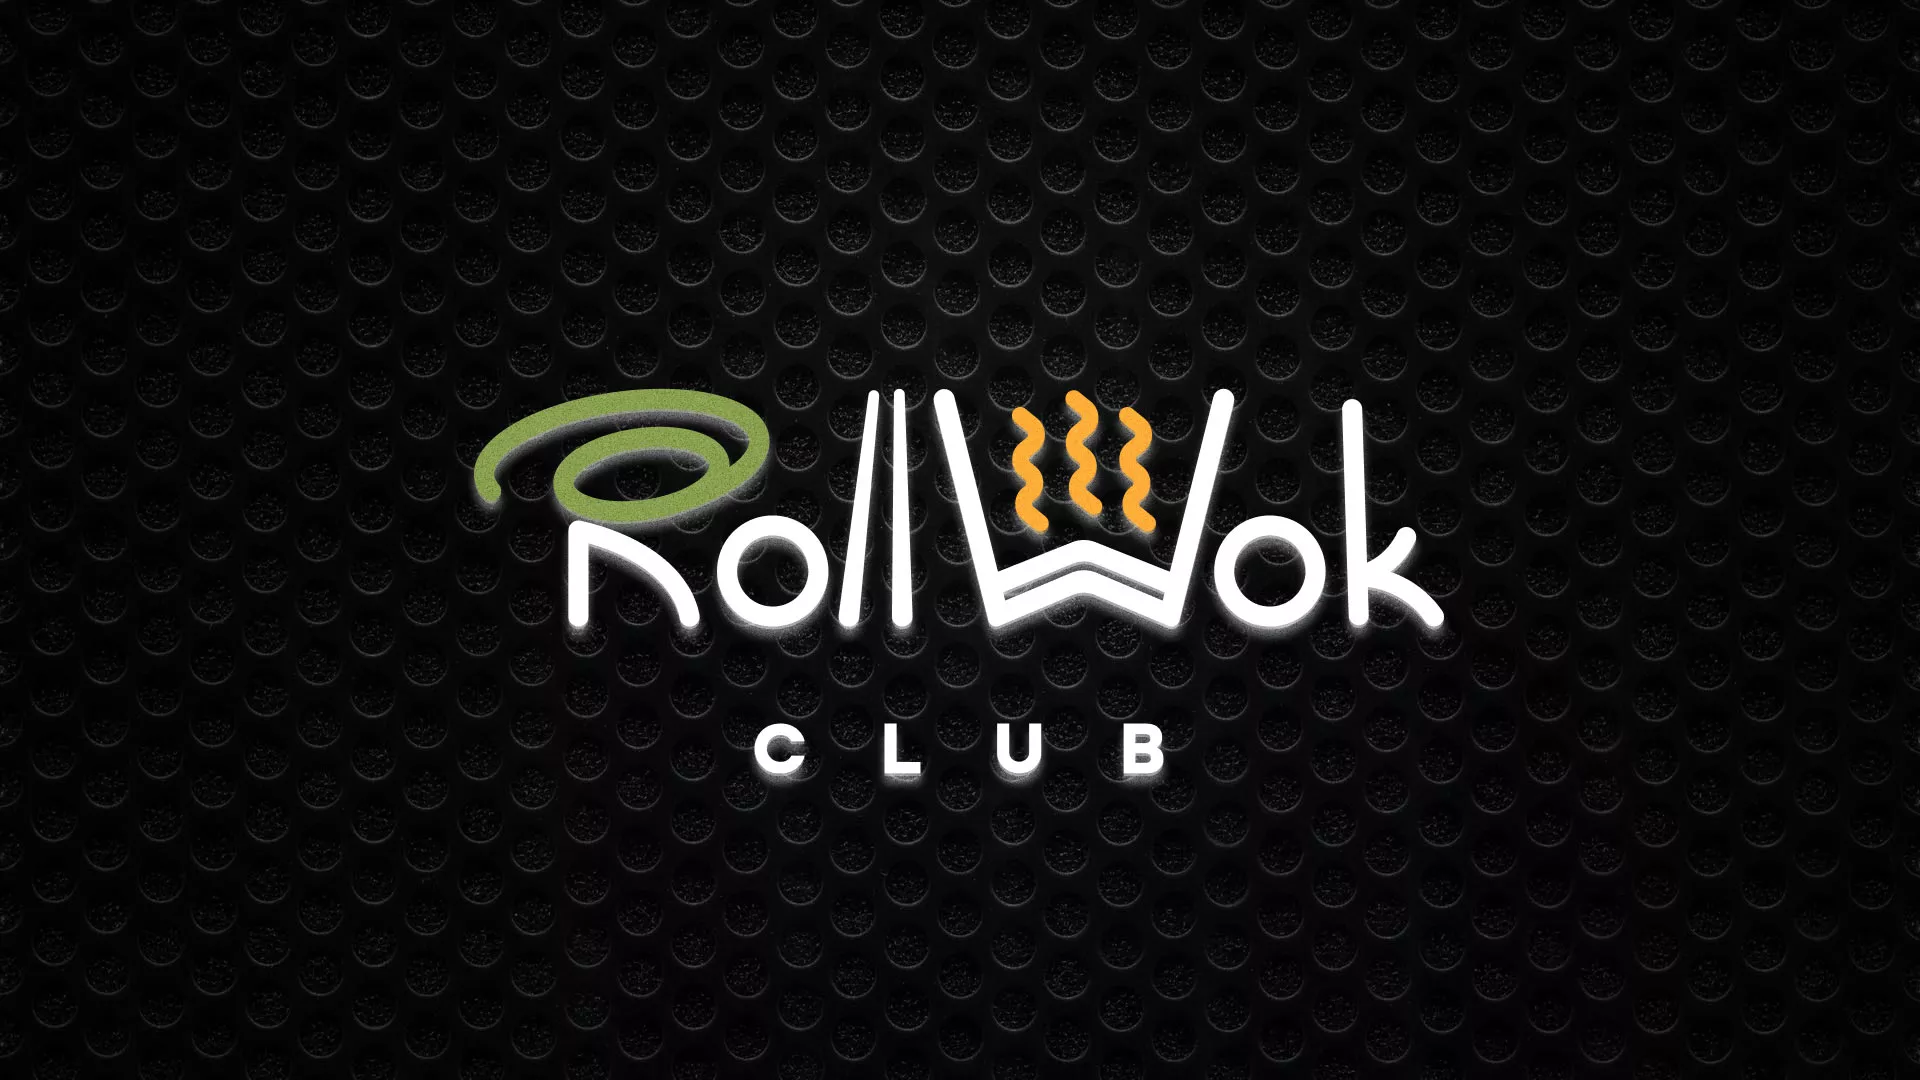 Брендирование торговых точек суши-бара «Roll Wok Club» в Симферополе